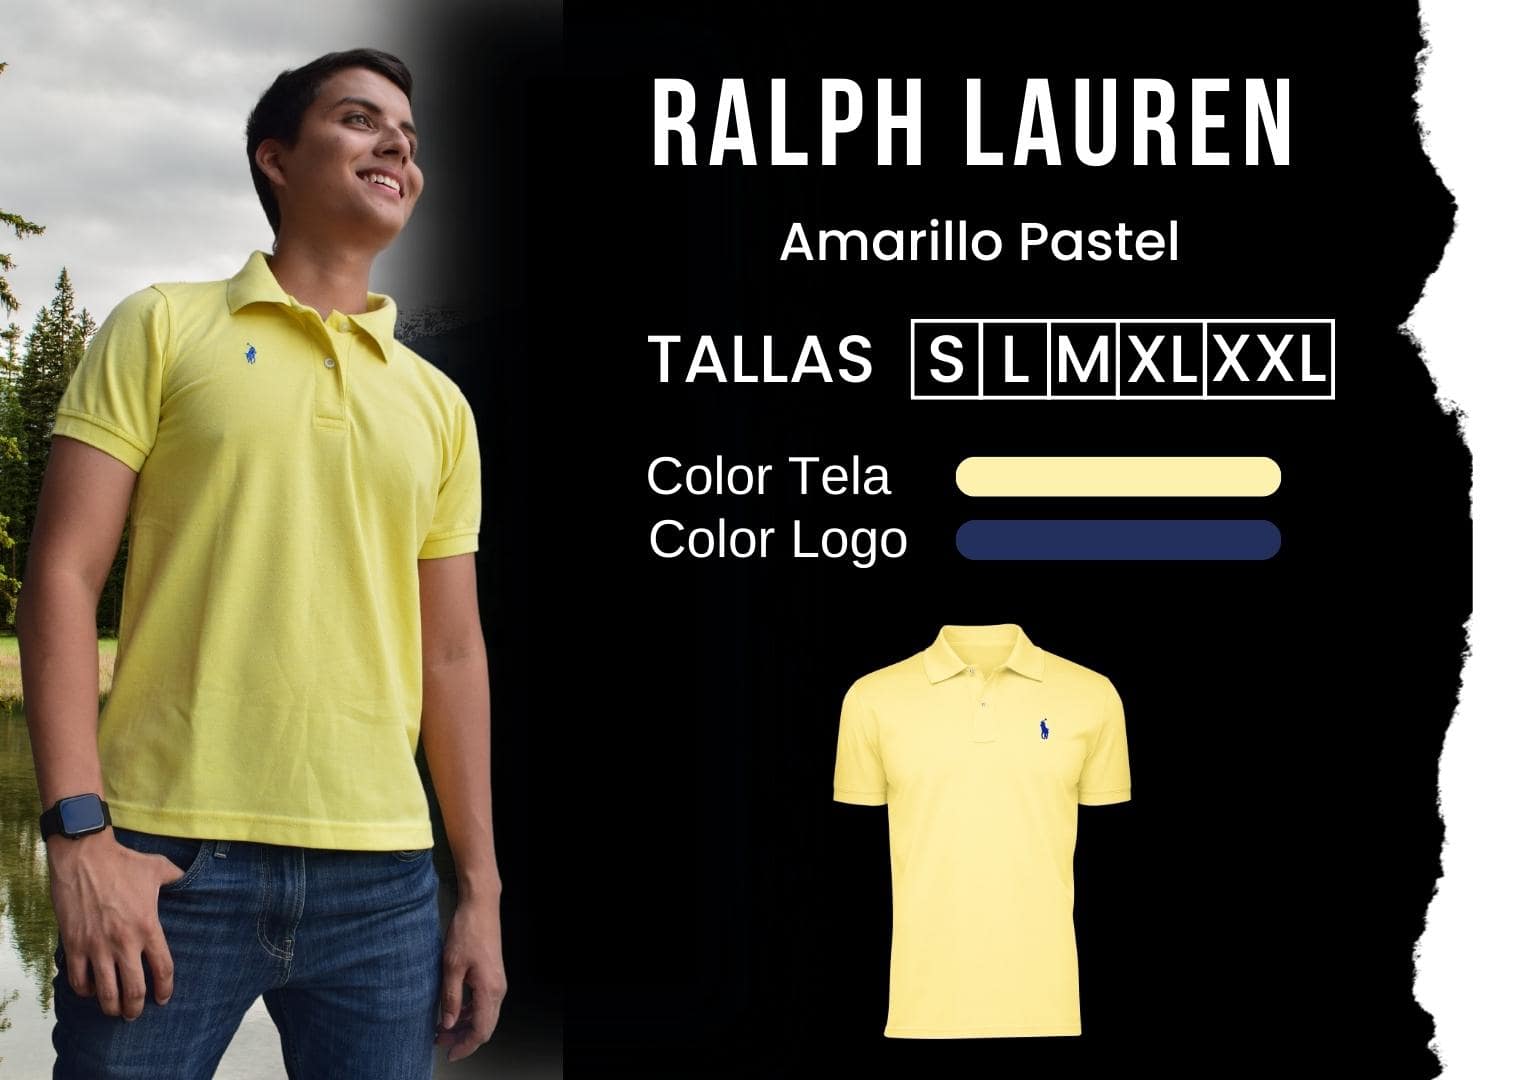 camiseta Ralph Lauren polo hombre tienda olevan color amarillo pastel